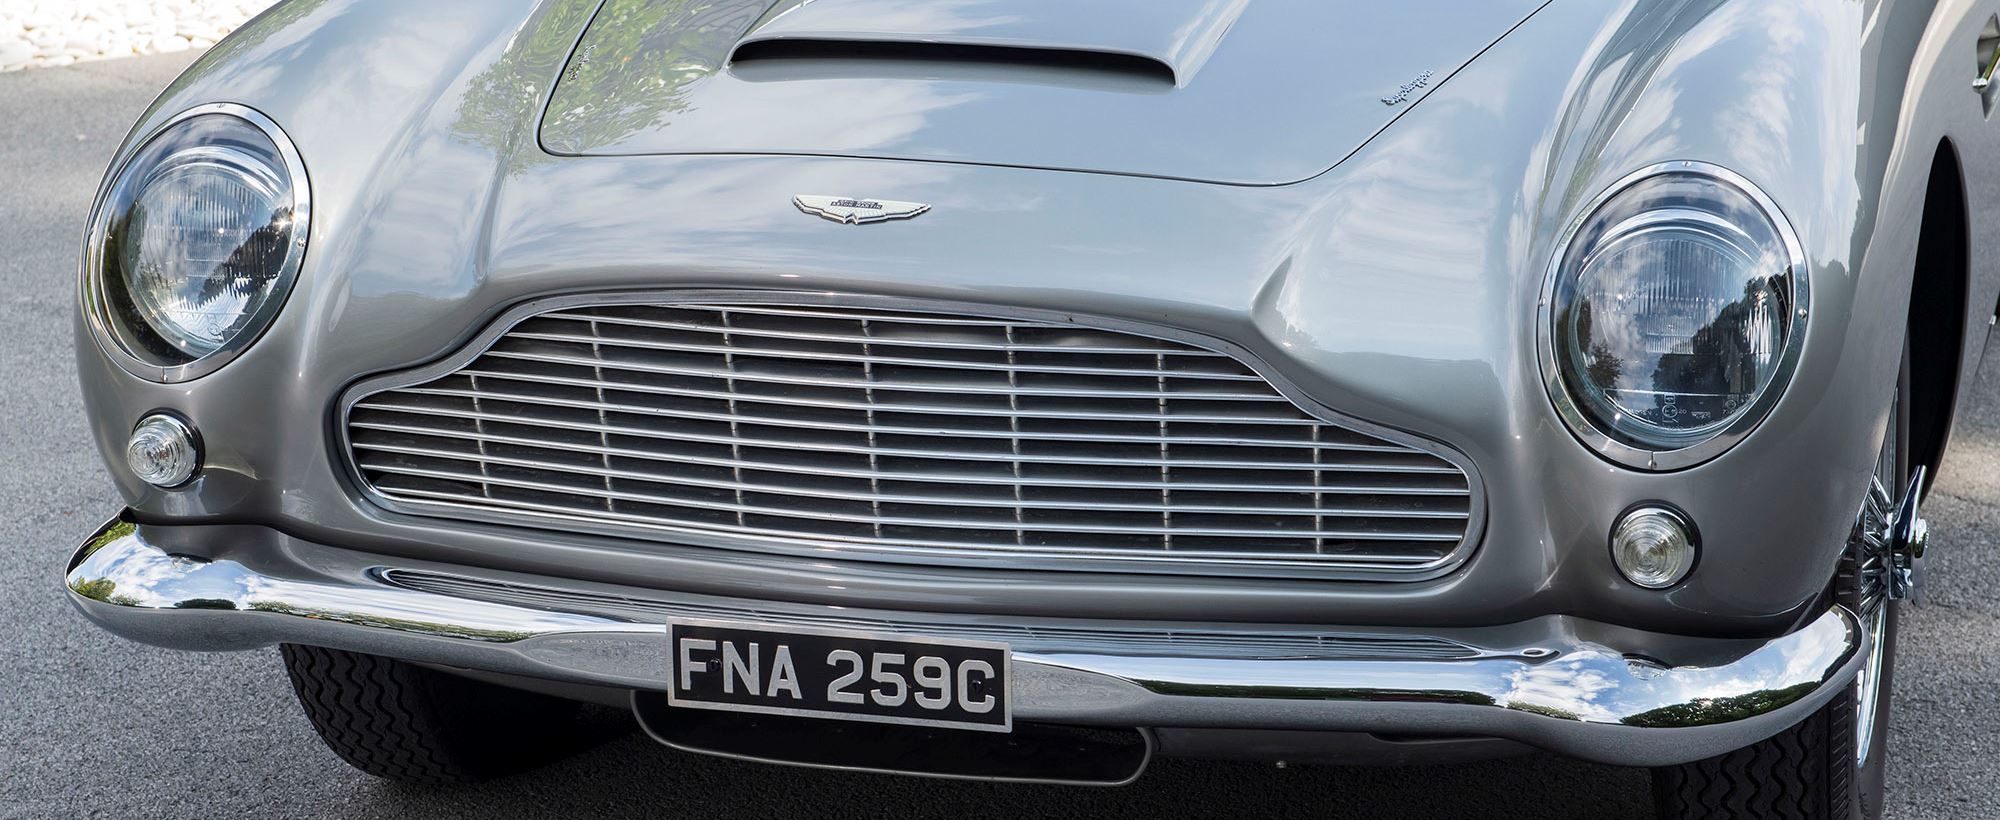 Aston Martin DB5 044.jpg